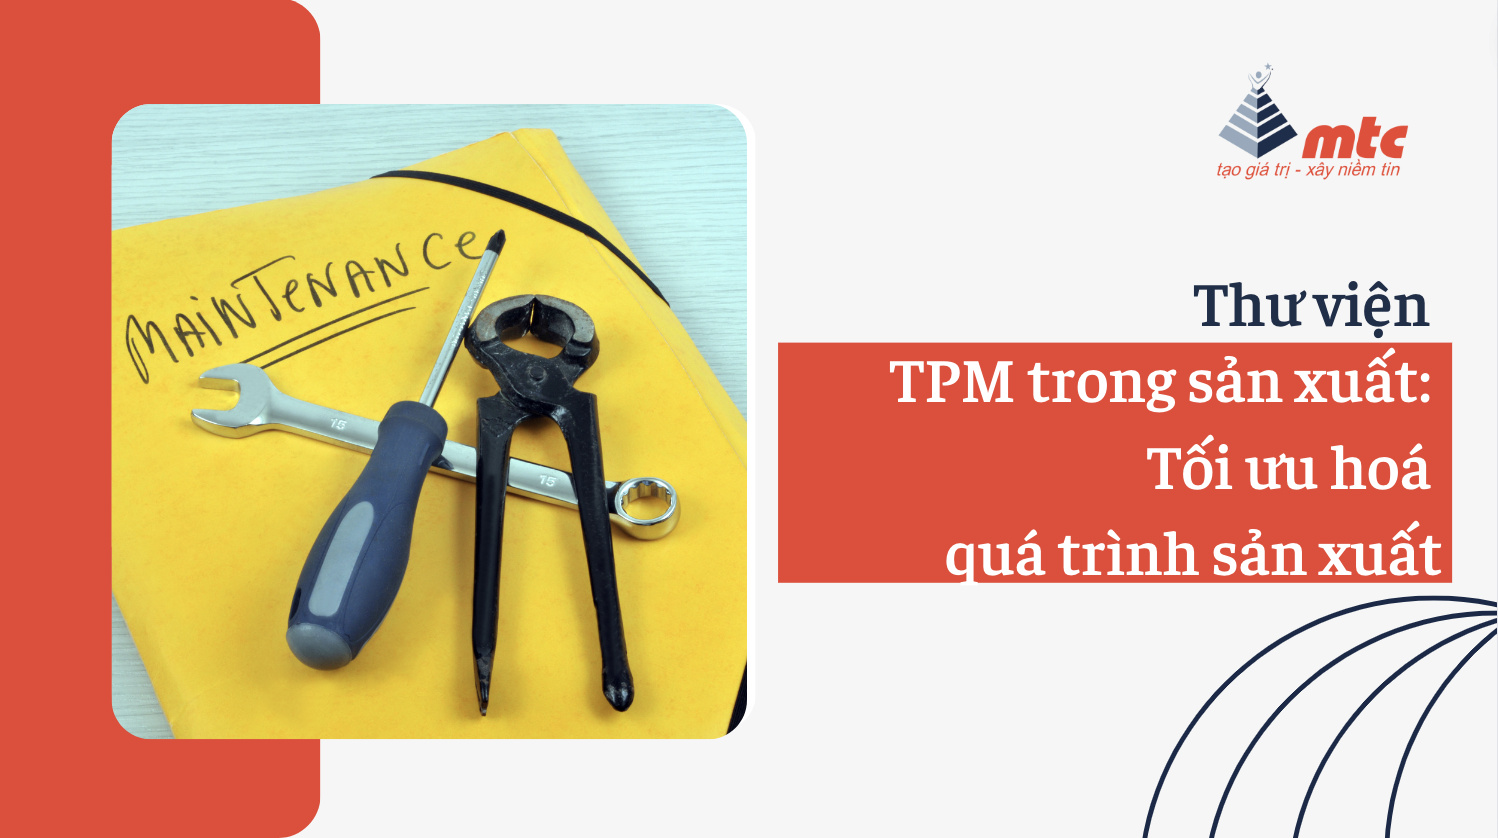 TPM trong sản xuất: Tối ưu hoá quá trình sản xuất